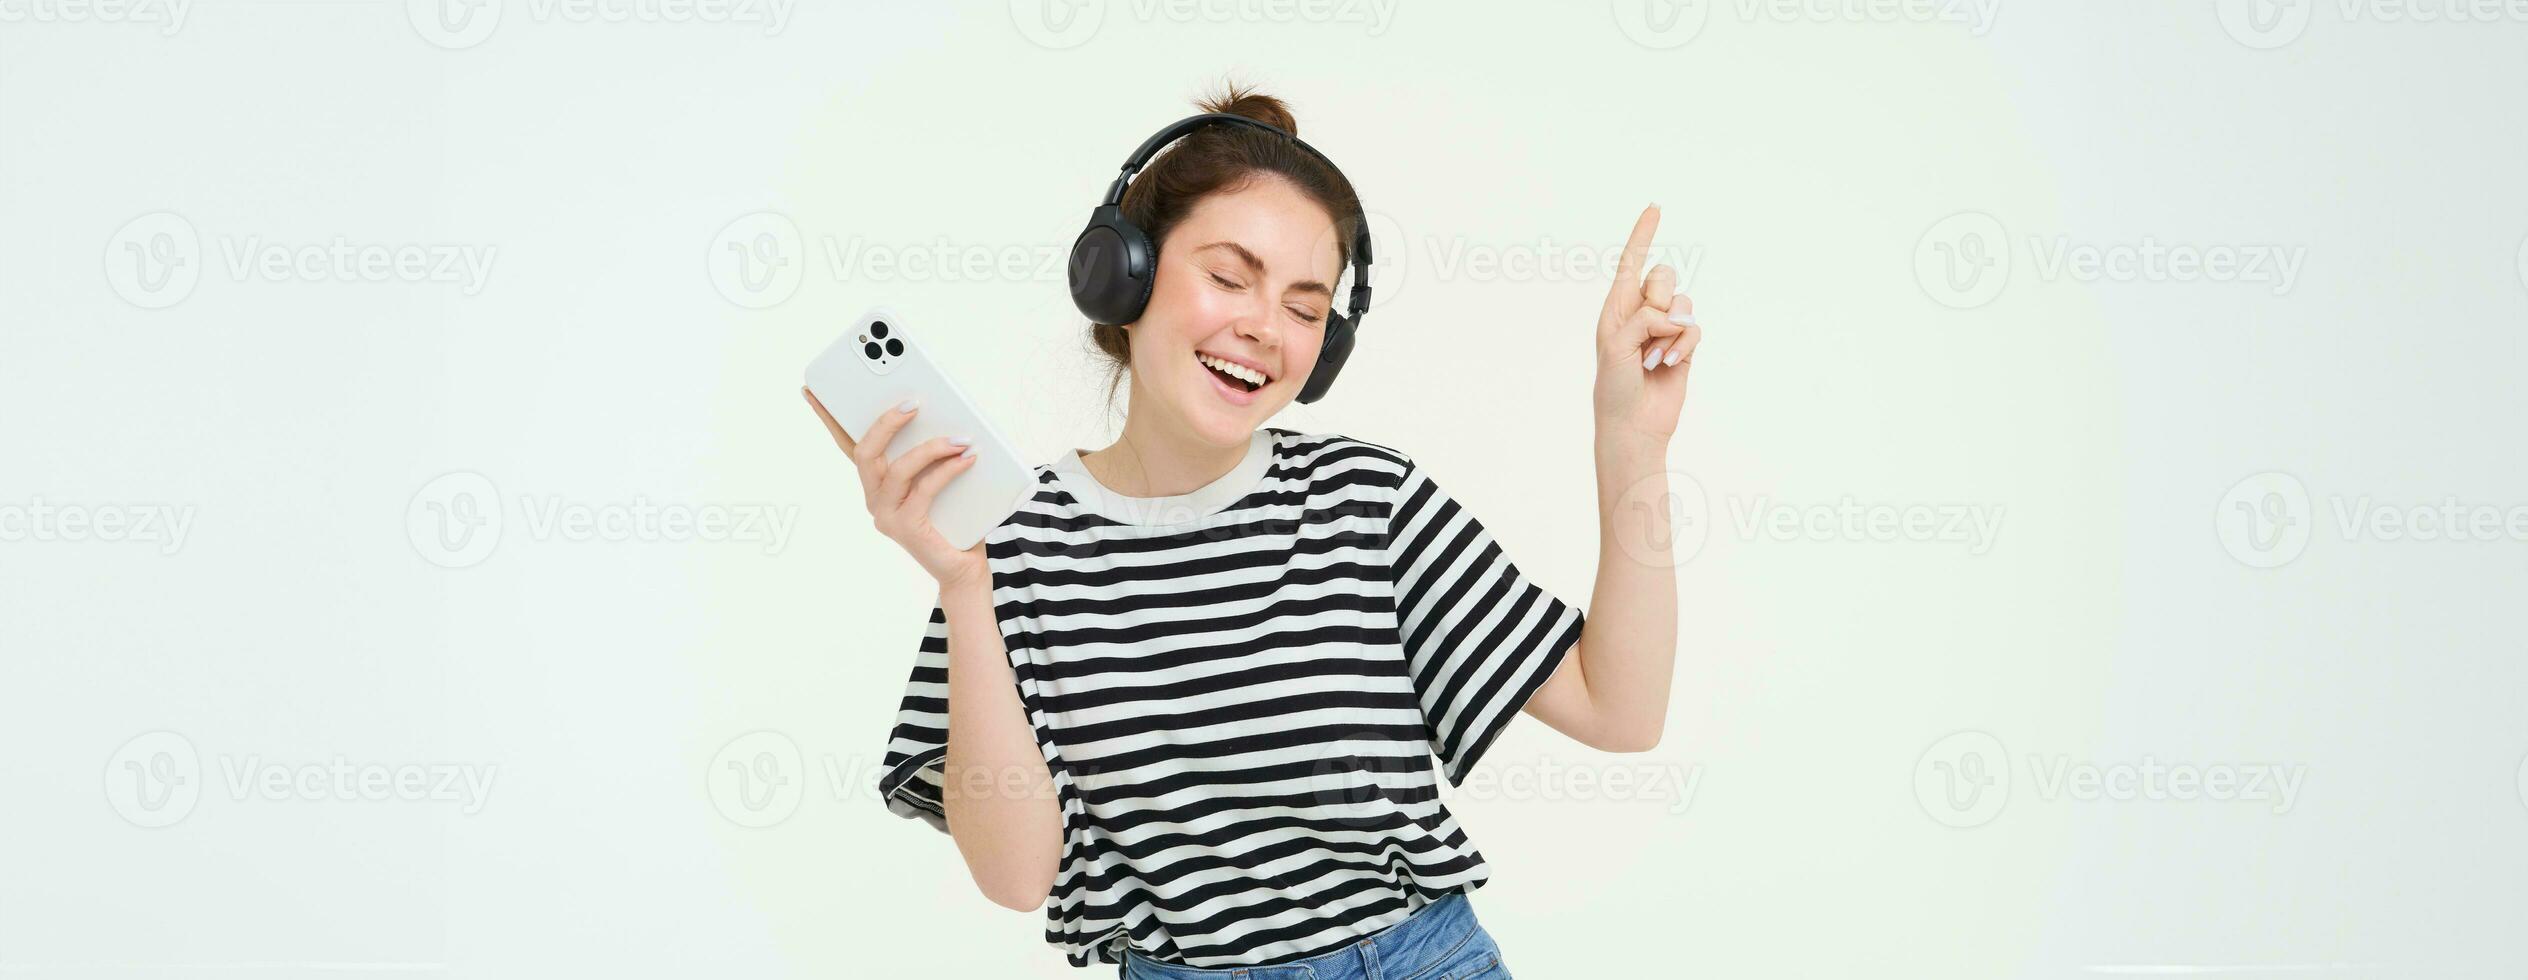 jung Frau mit Smartphone Hören zu Musik, Tanzen zu ihr Lieblings Lied im Kopfhörer, posieren gegen Weiß Hintergrund foto